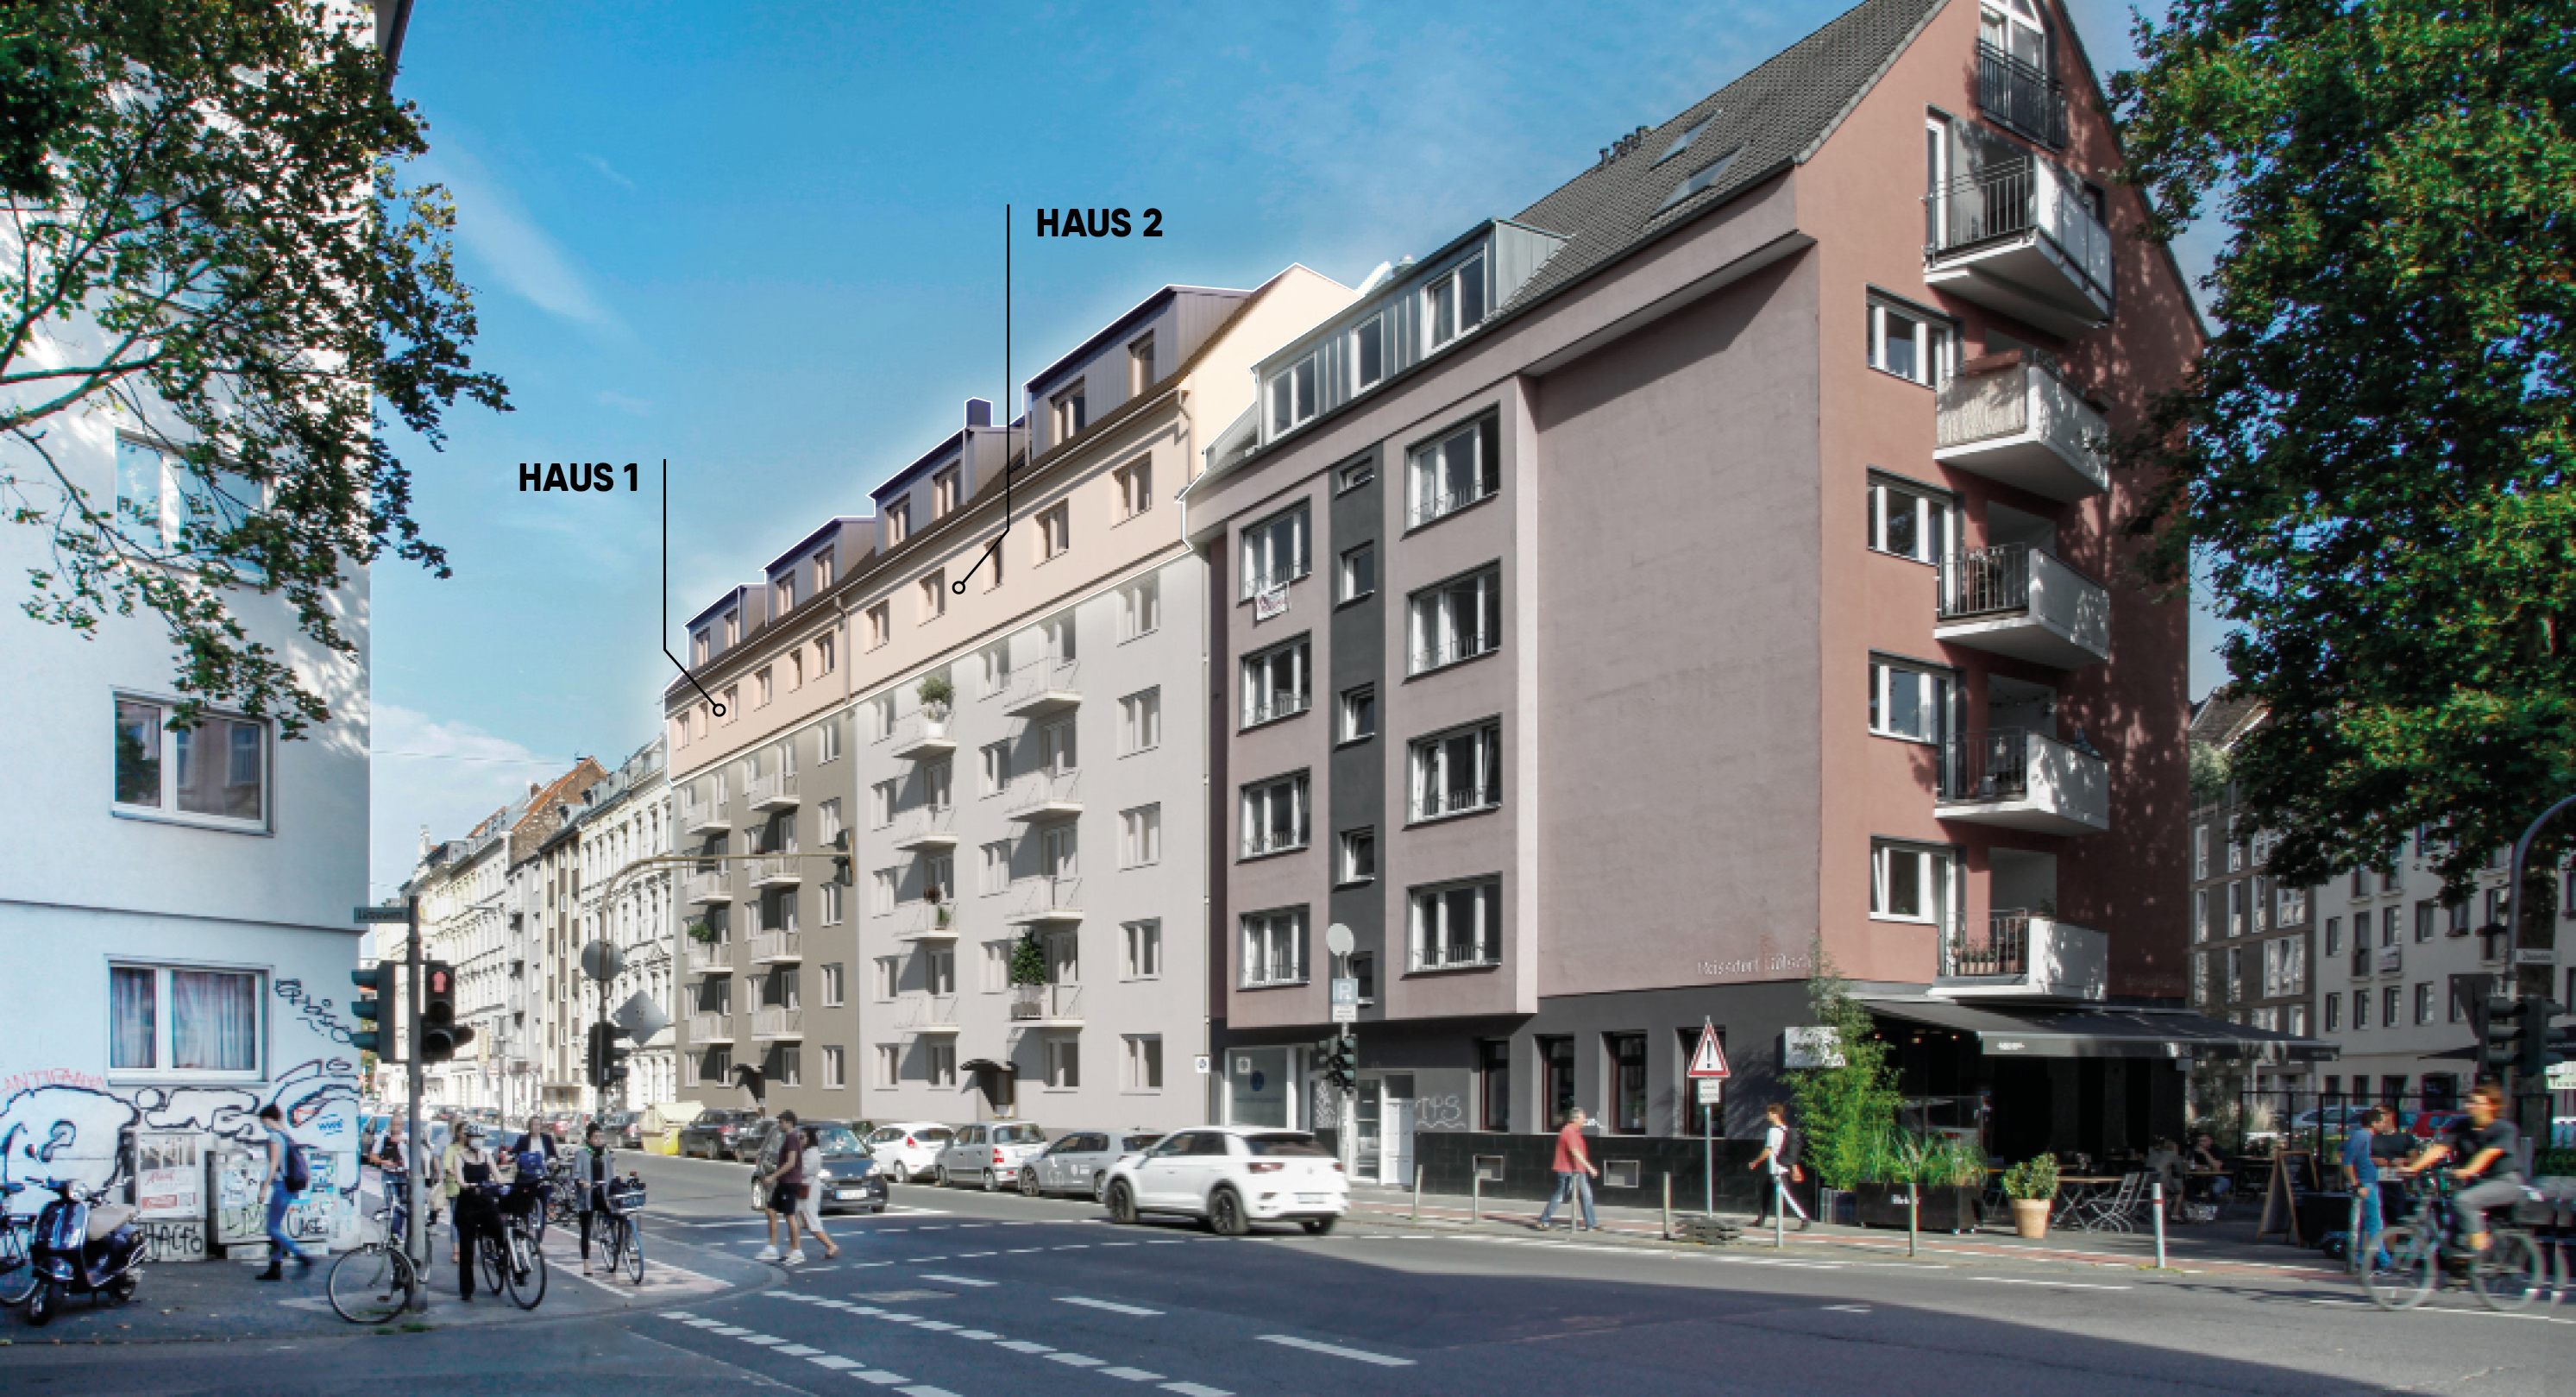 Moderne 3- und 5-Zimmer-Maisonette-Wohnungen mit Dachterrasse in Köln-Südstadt zum Kauf
					©Unverbindliche Darstellung
				